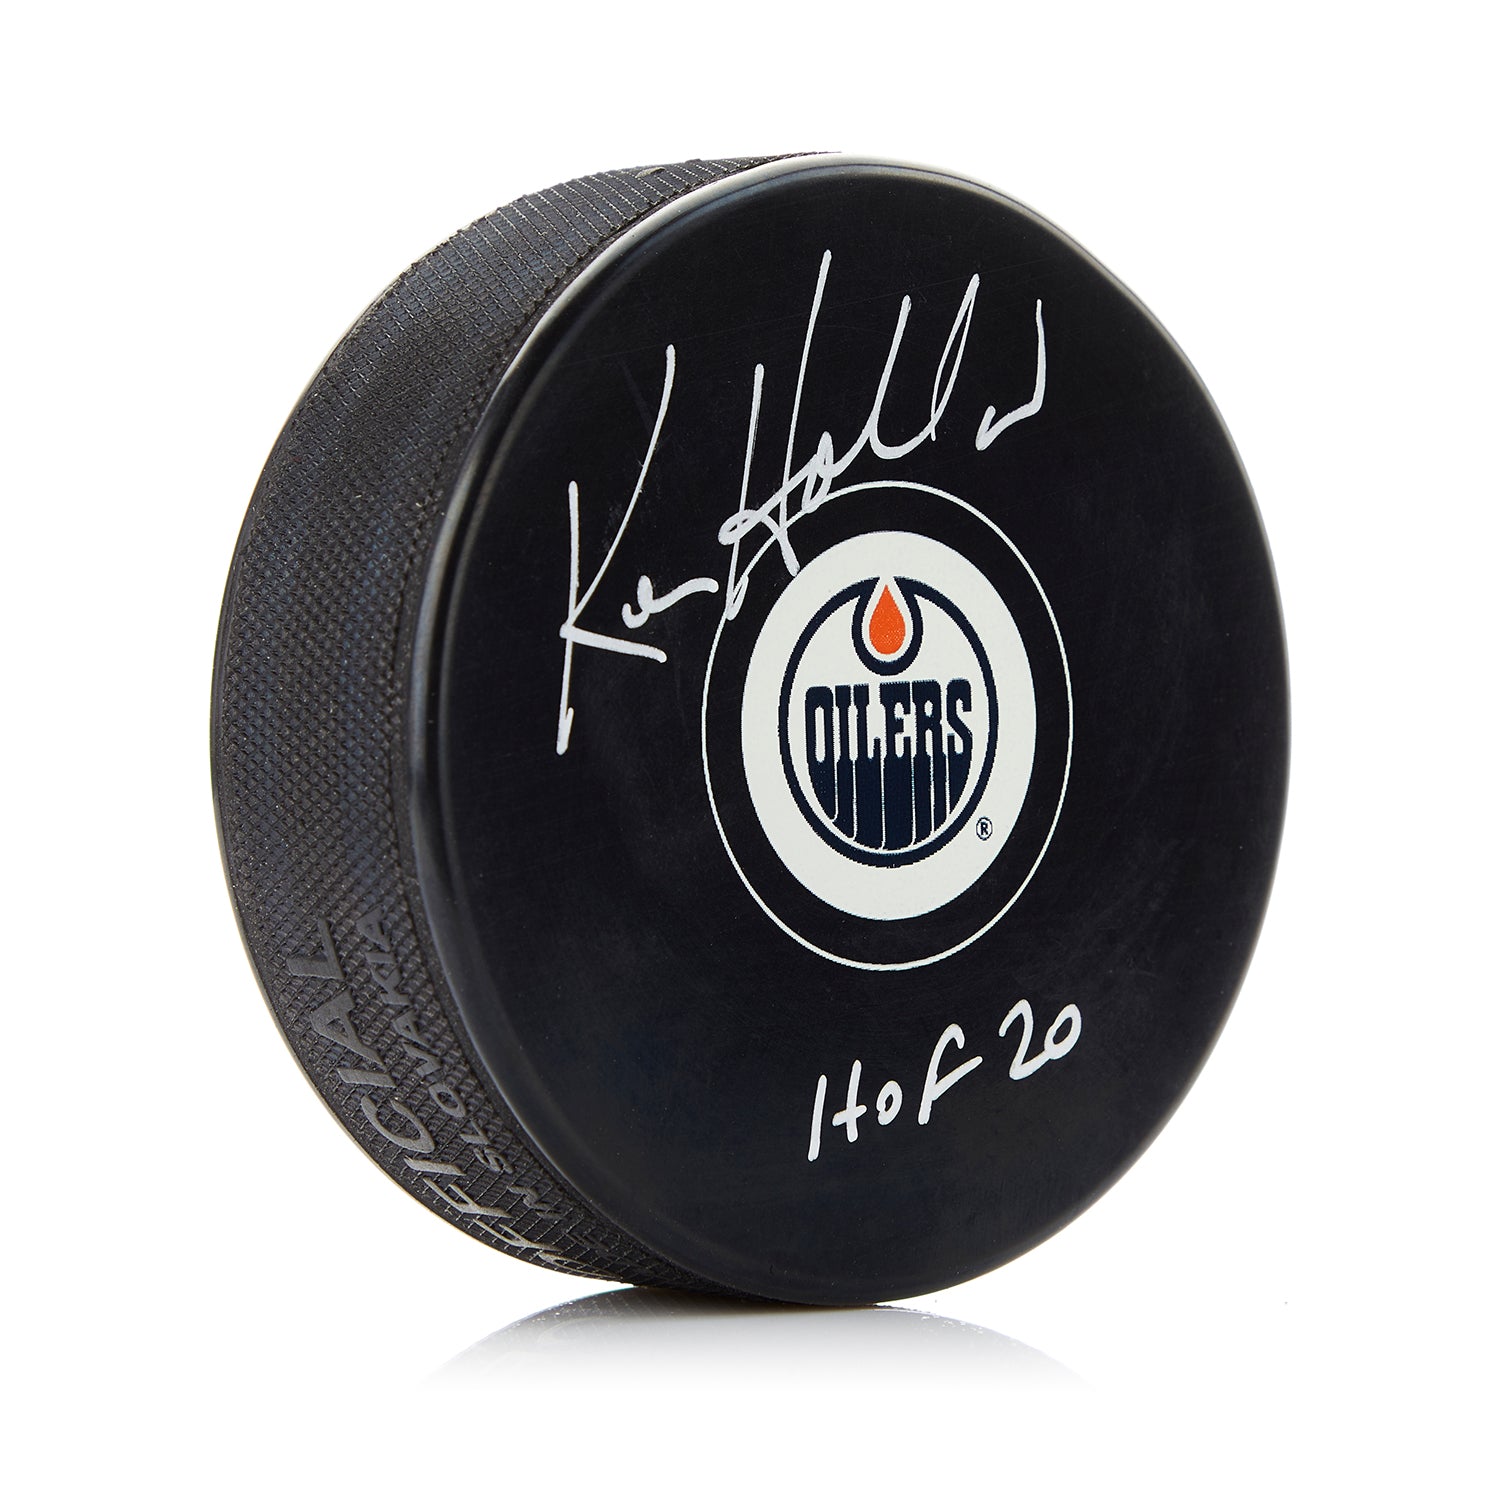 Ken Holland Edmonton Oilers Signed Hockey Puck with HOF Note